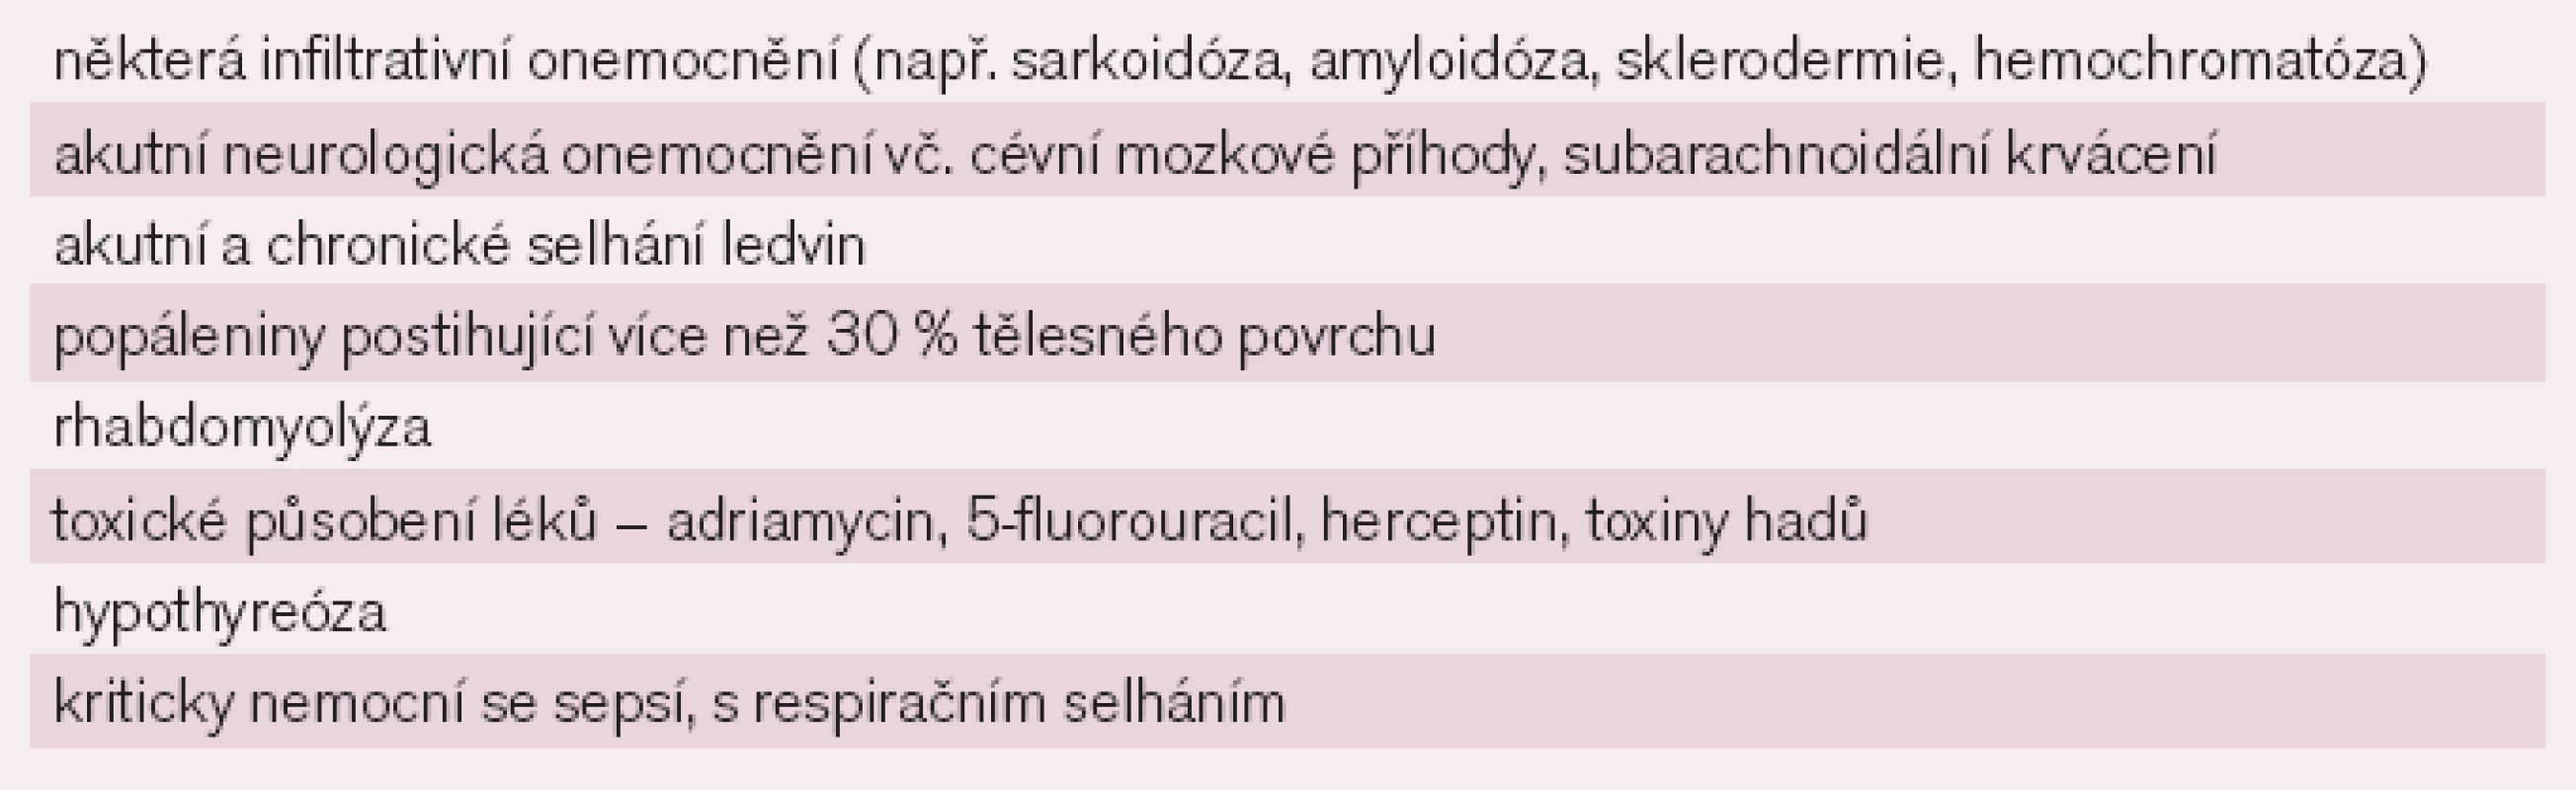 Nekardiální onemocnění s možným zvýšením troponinů [4].